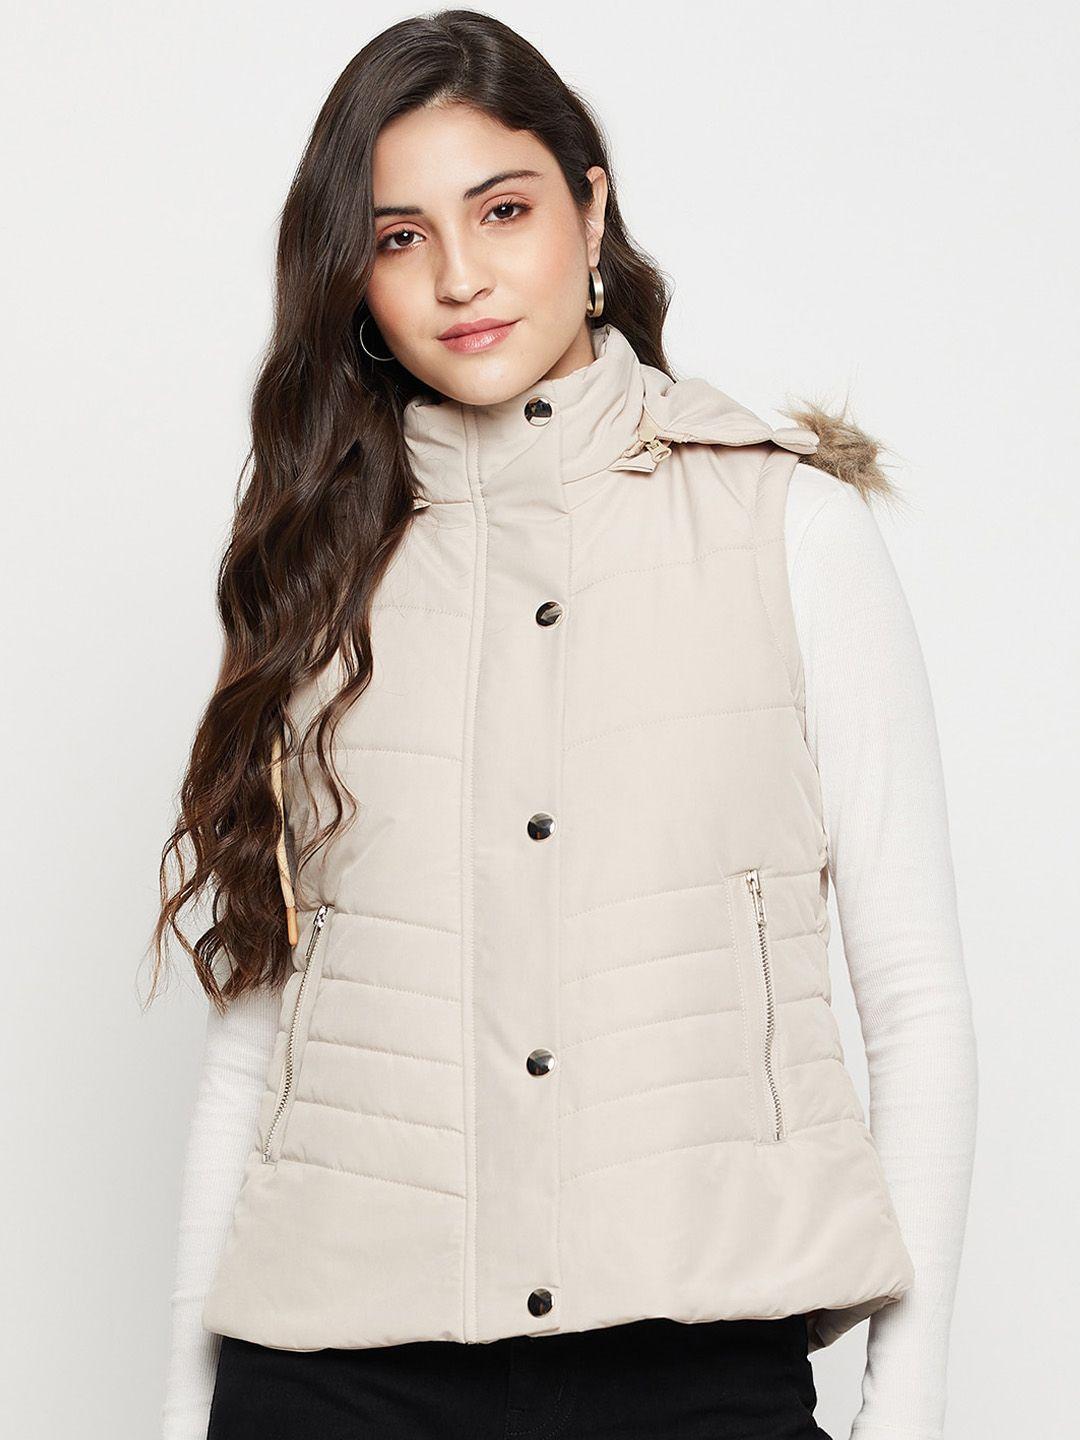 cantabil hooded lightweight sleeveless puffer jacket